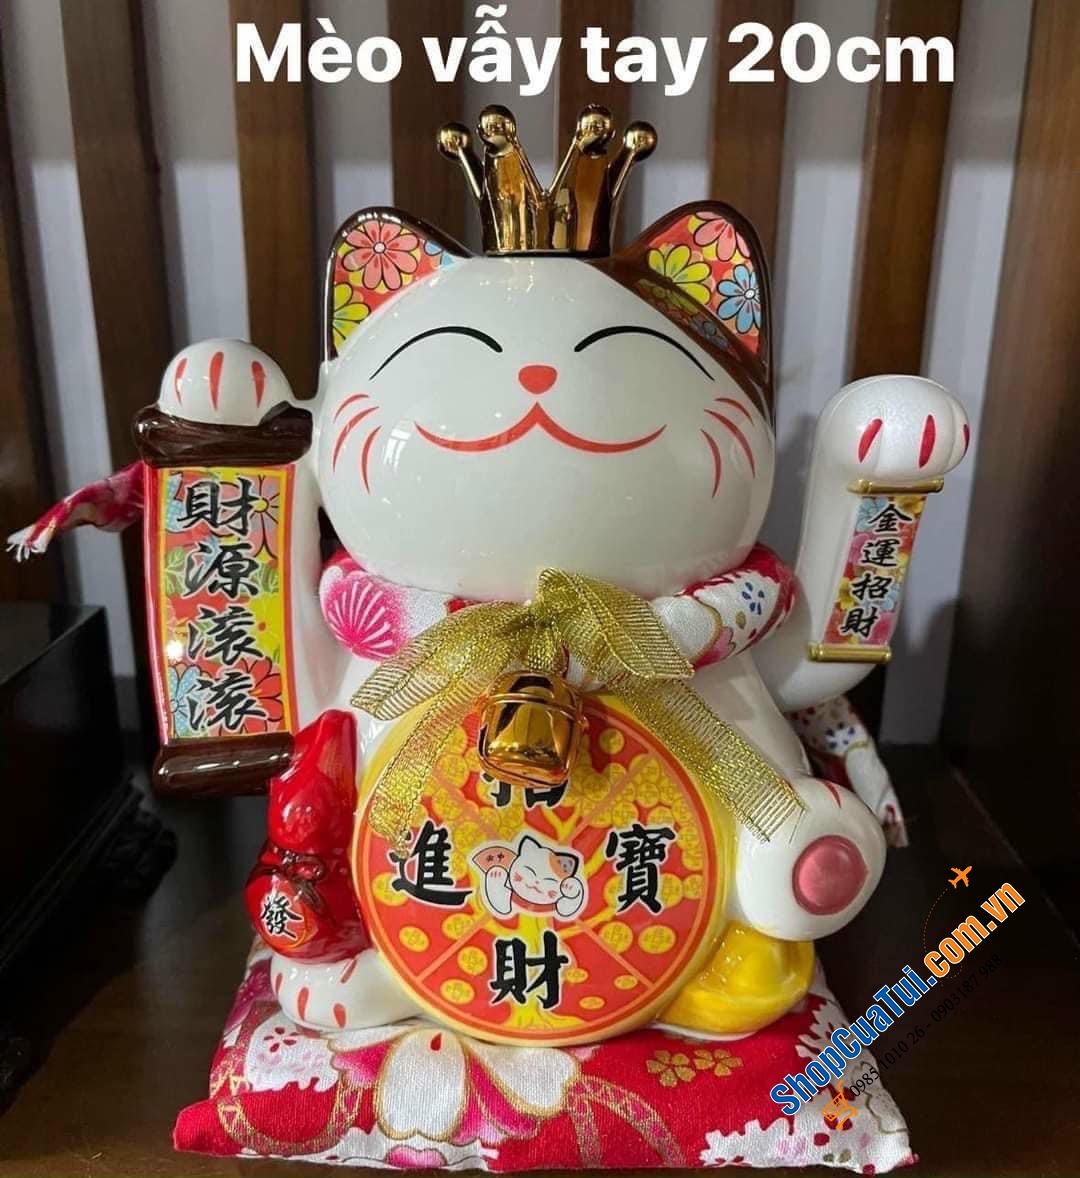 Mèo vẫy tay thần tài Nhật bản Maneki-neko - Kinh Doanh Đắc Lợi, Hạnh phúc sung túc 20 cm - mèo thần tài 20 cm quá đẹp cả về thần thái và thiết kế